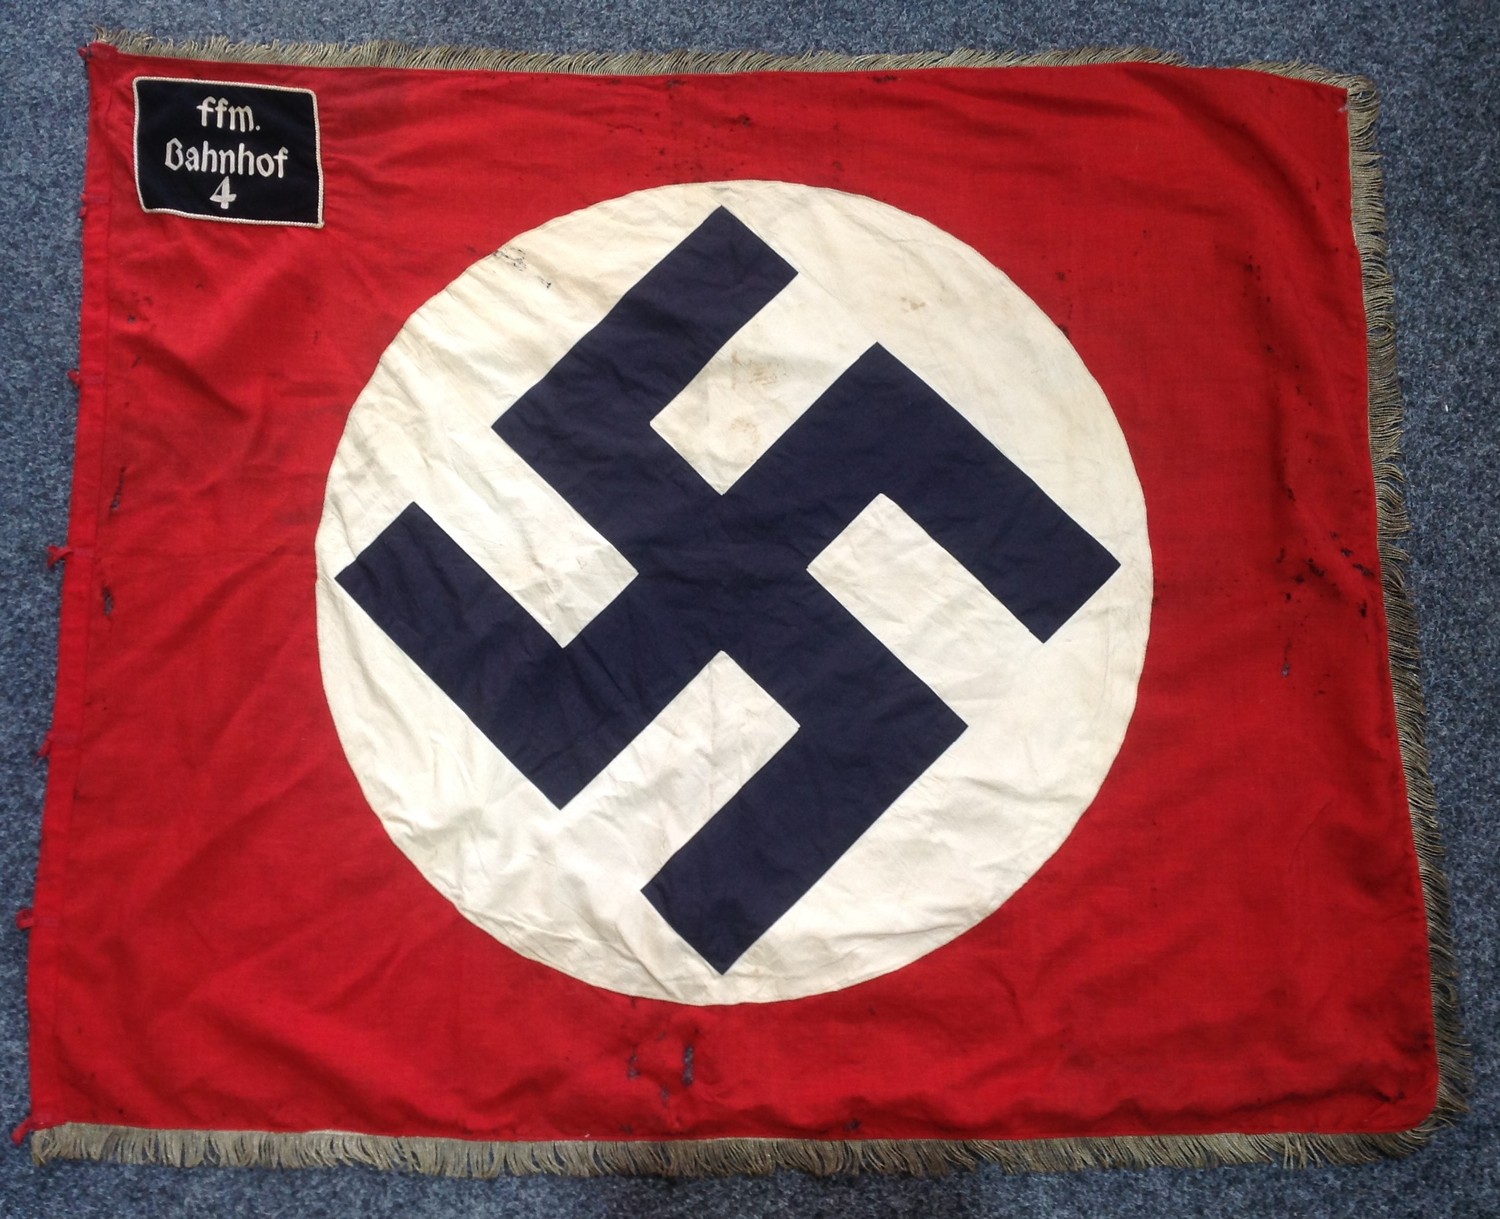 WW2 Third Reich Nationalsozialistische Betriebszellenorganisation ( National Socialist Factory